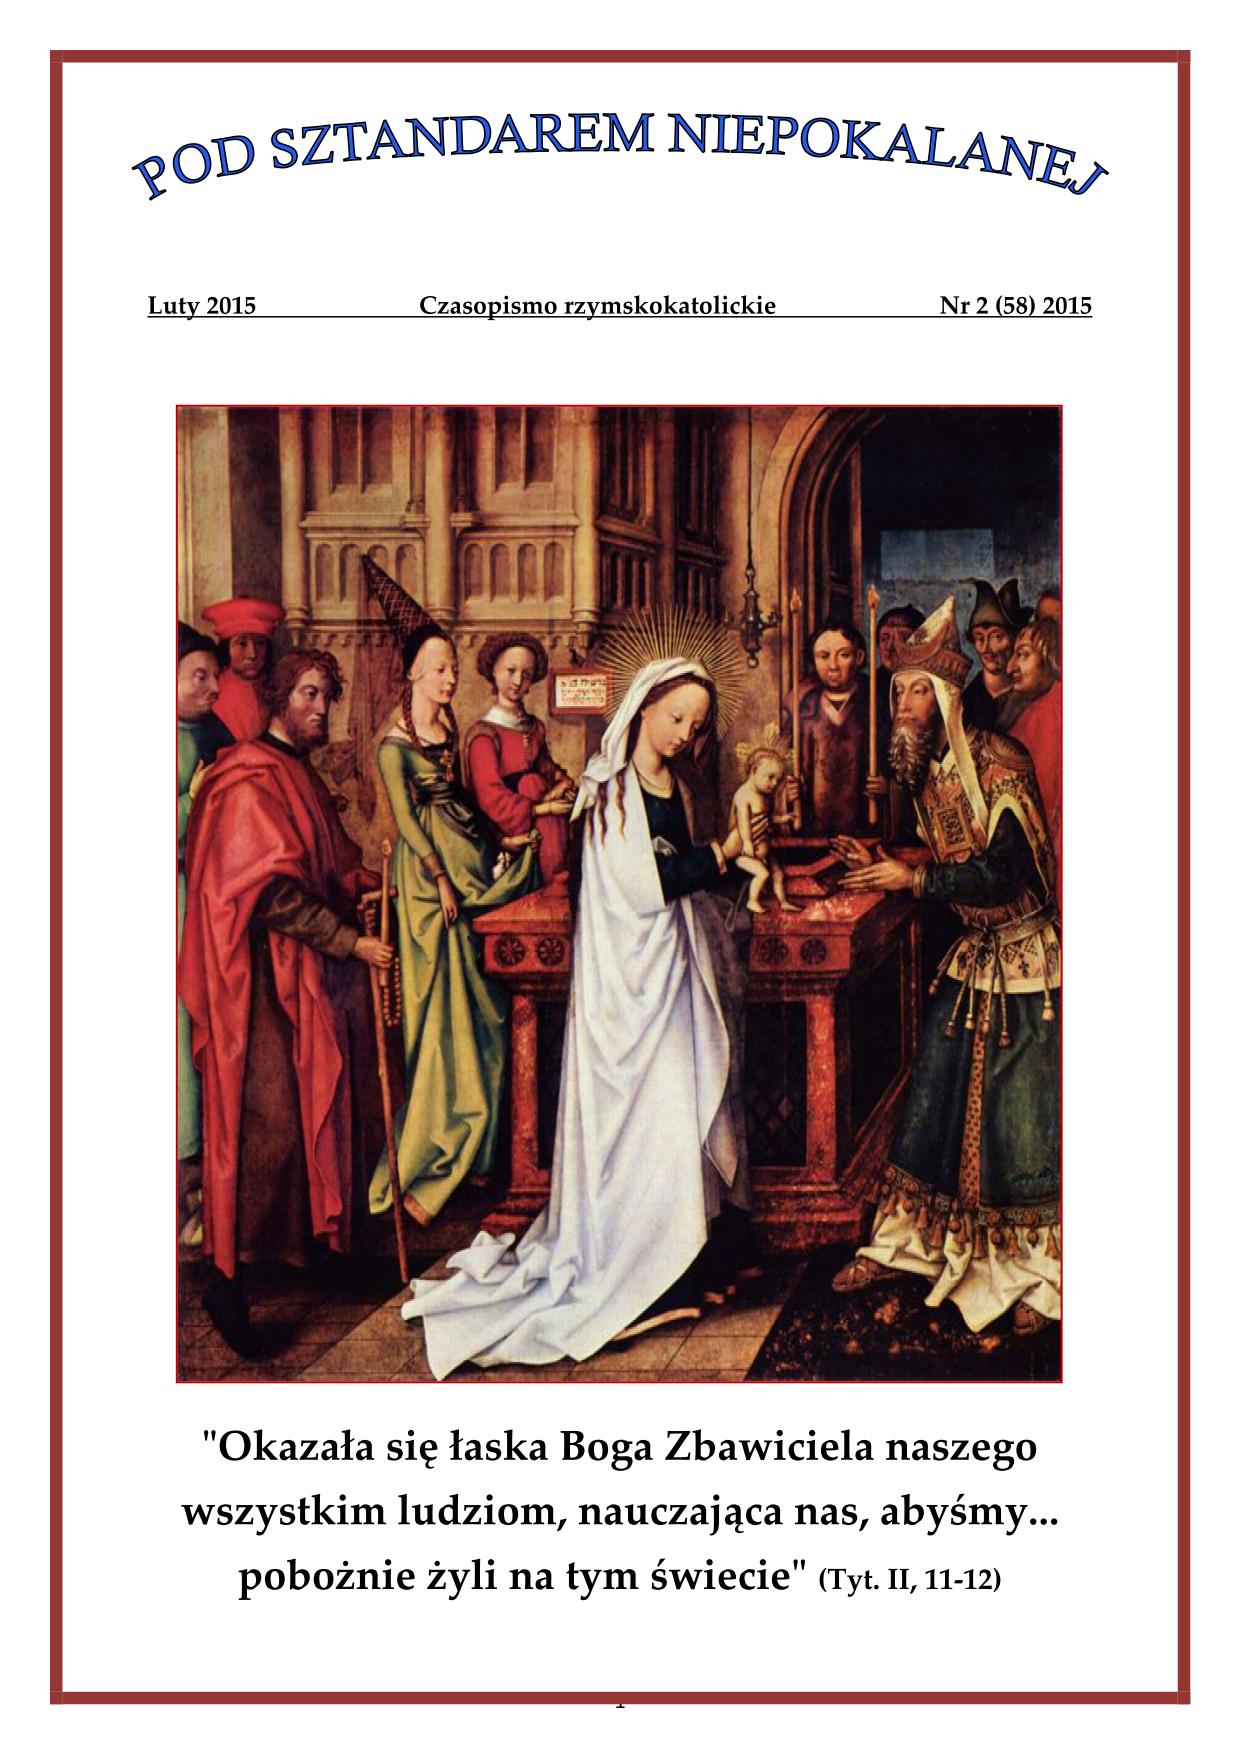 "Pod Sztandarem Niepokalanej". Nr 58. Luty 2015. Czasopismo rzymskokatolickie.